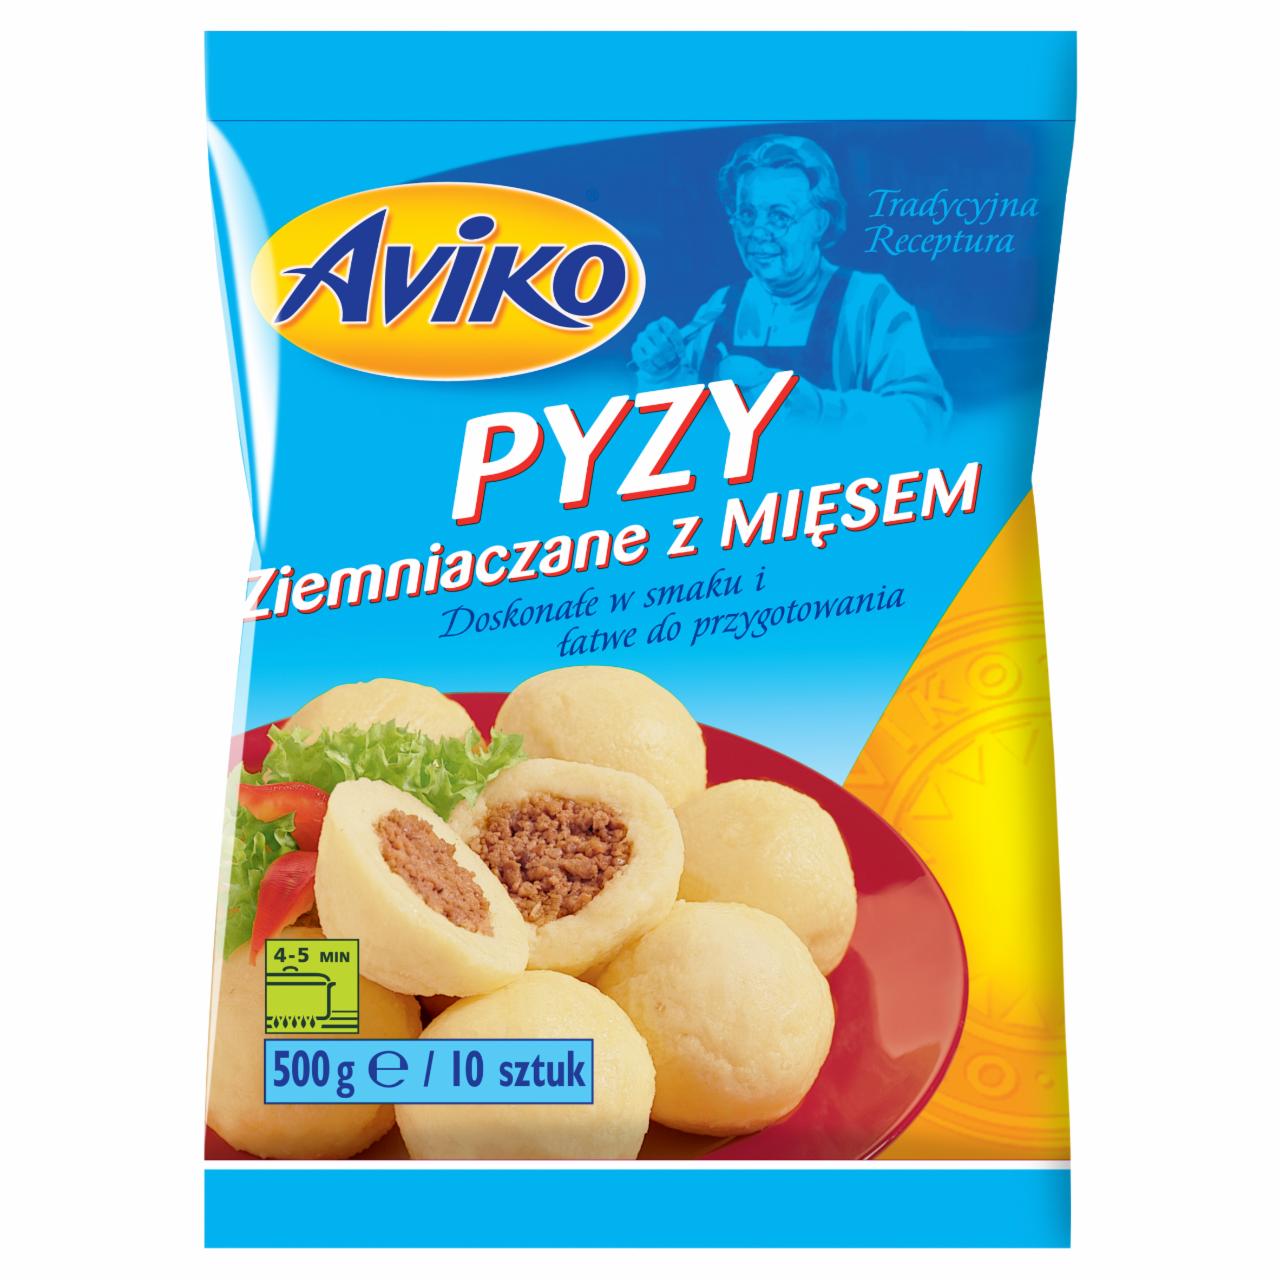 Zdjęcia - Aviko Pyzy ziemniaczane z mięsem 500 g (10 sztuk)